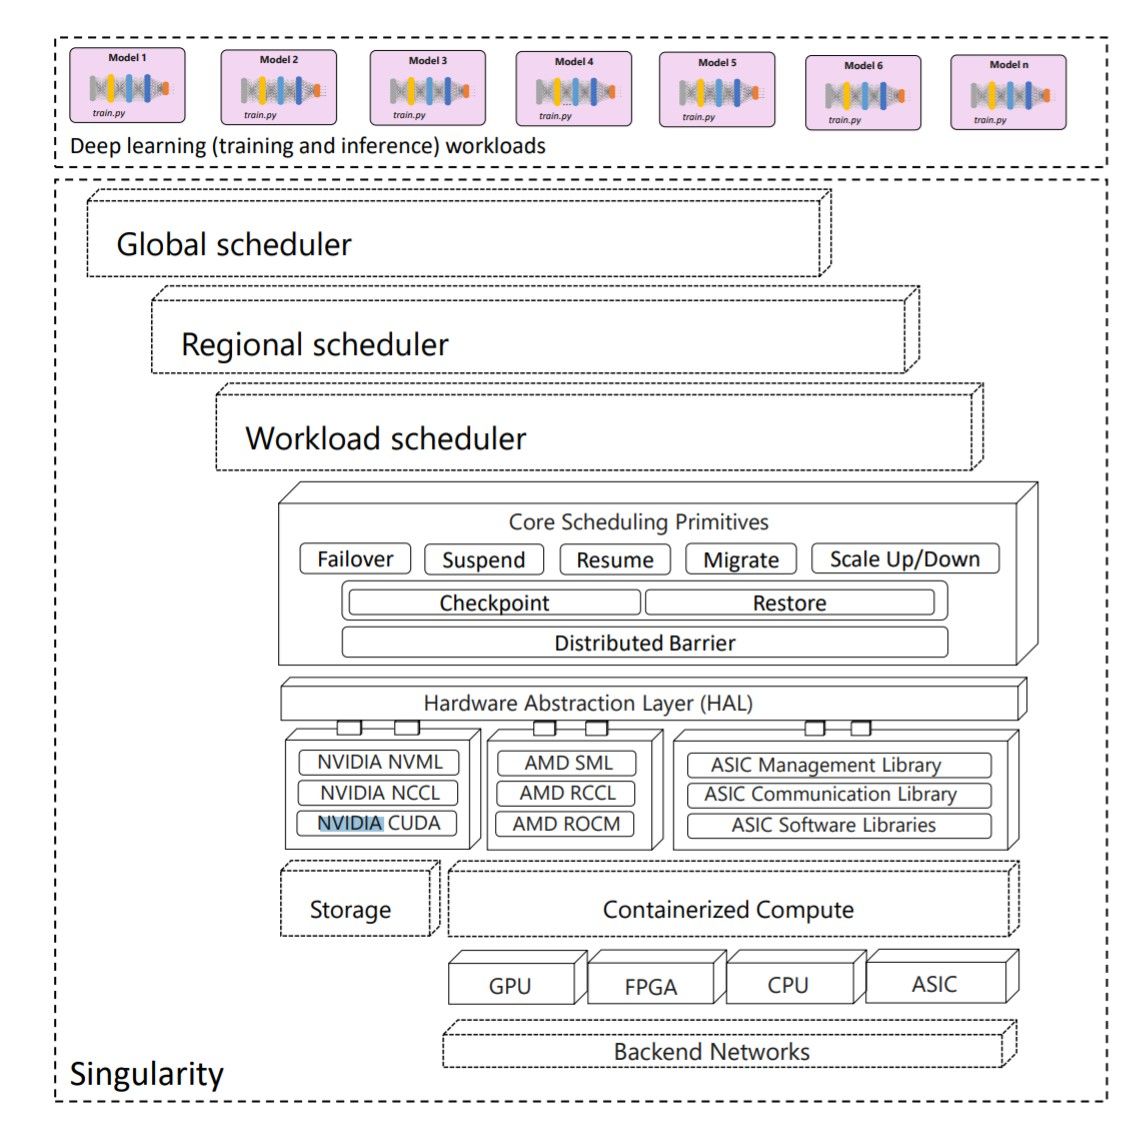 マイクロソフトのAIシステム「Singularity」のアーキテクチャ。
出典：Shukla et al(2022)